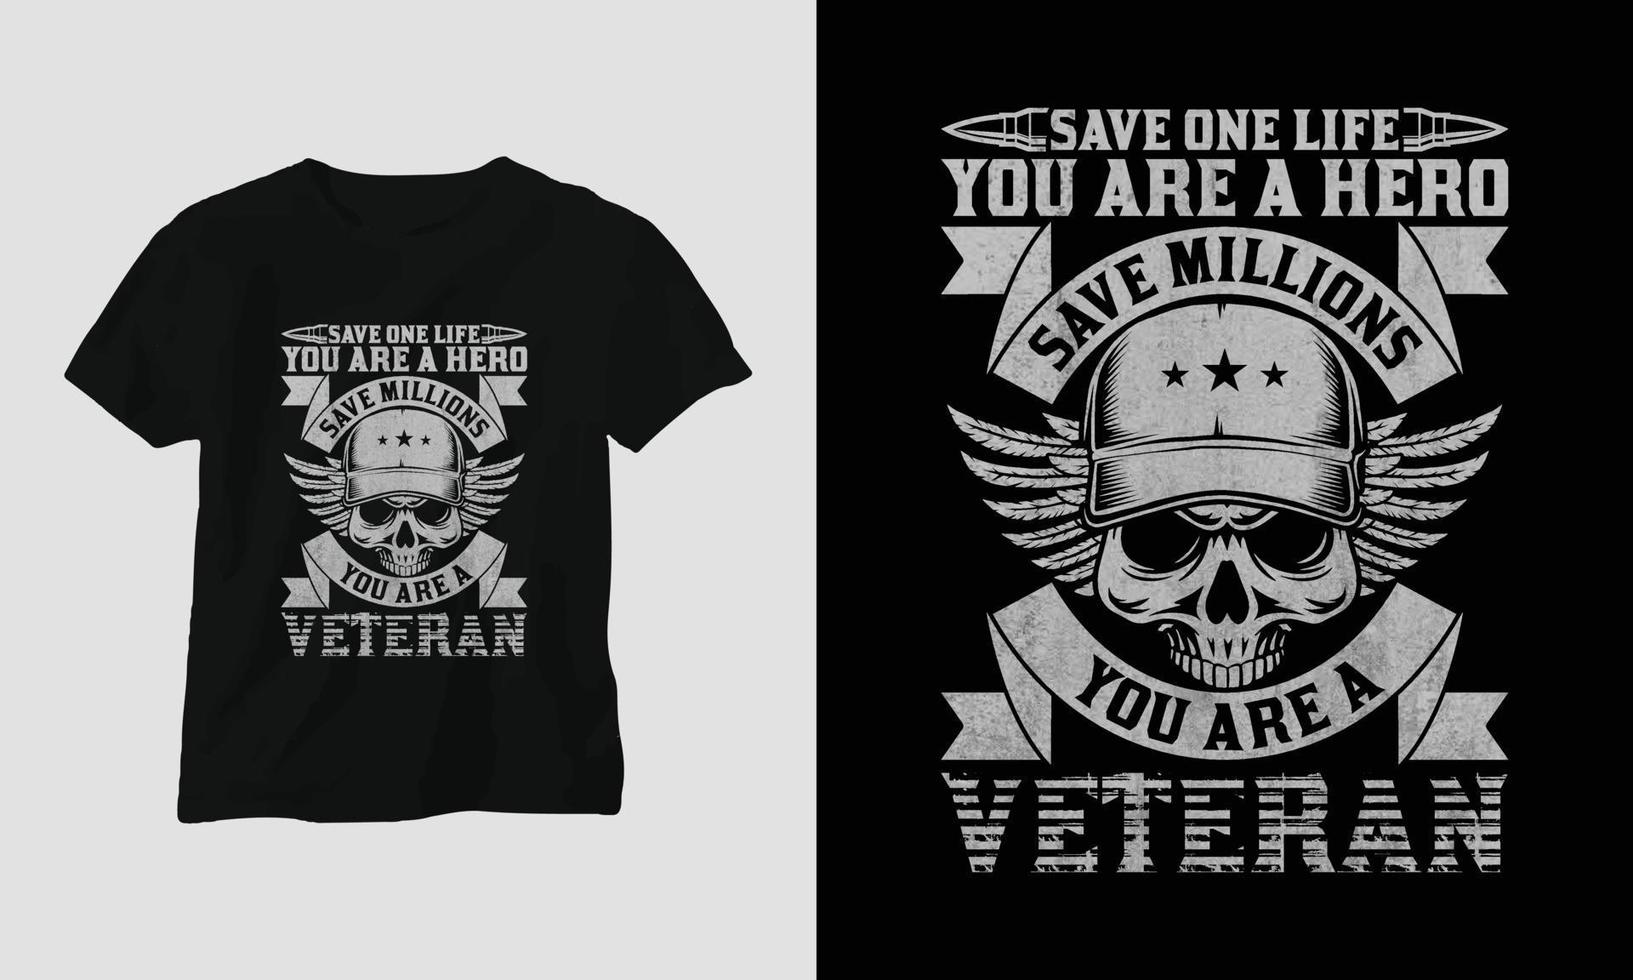 Veteranentag T-Shirt-Design mit dem Soldaten, der Flagge, den Waffen und dem Schädel. Vintage-Stil mit Grunge-Effekt vektor